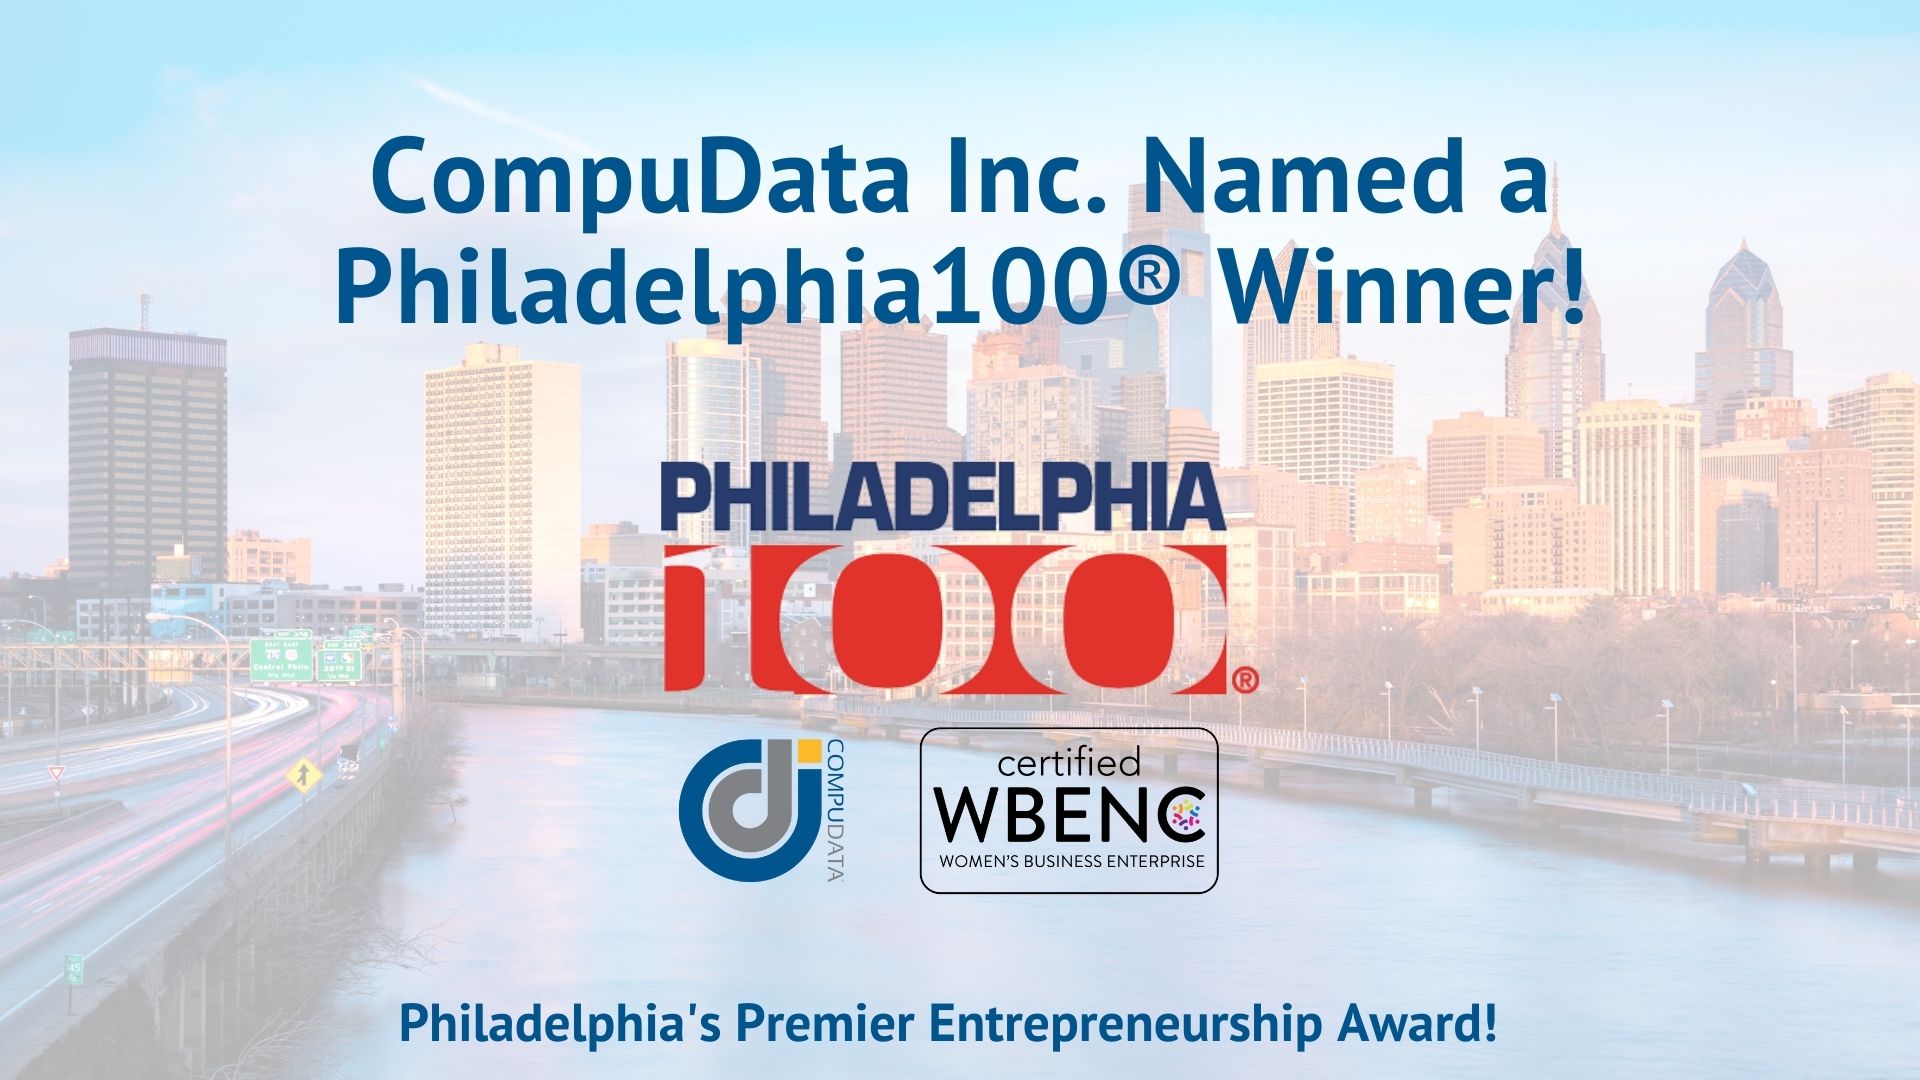 2021 Philadelphia100® by the Entrepreneurs Forum of Greater Philadelphia (EFGP)